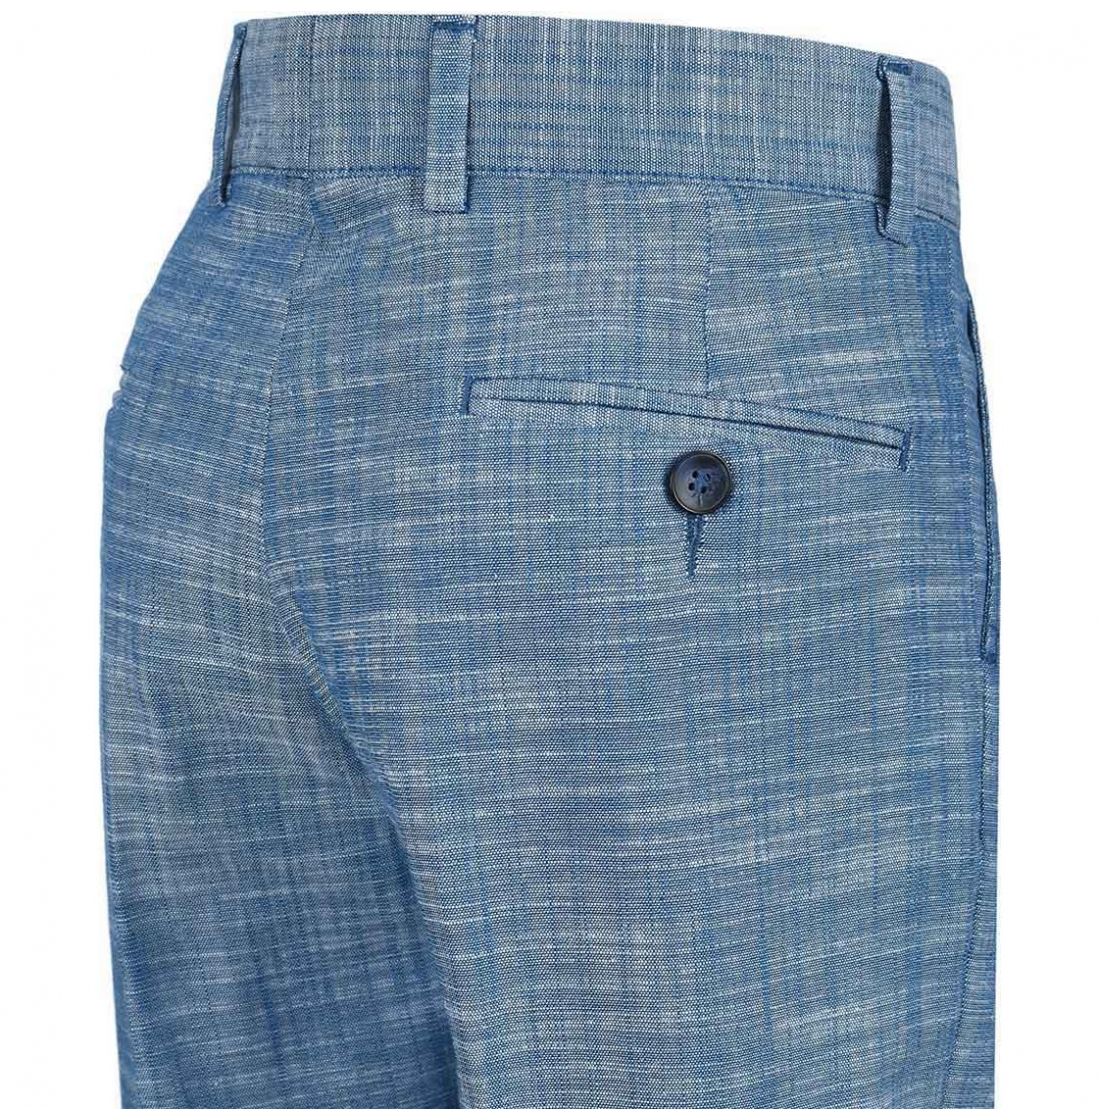 Pantalón jaspe azul oscar collection para niño  - Sears